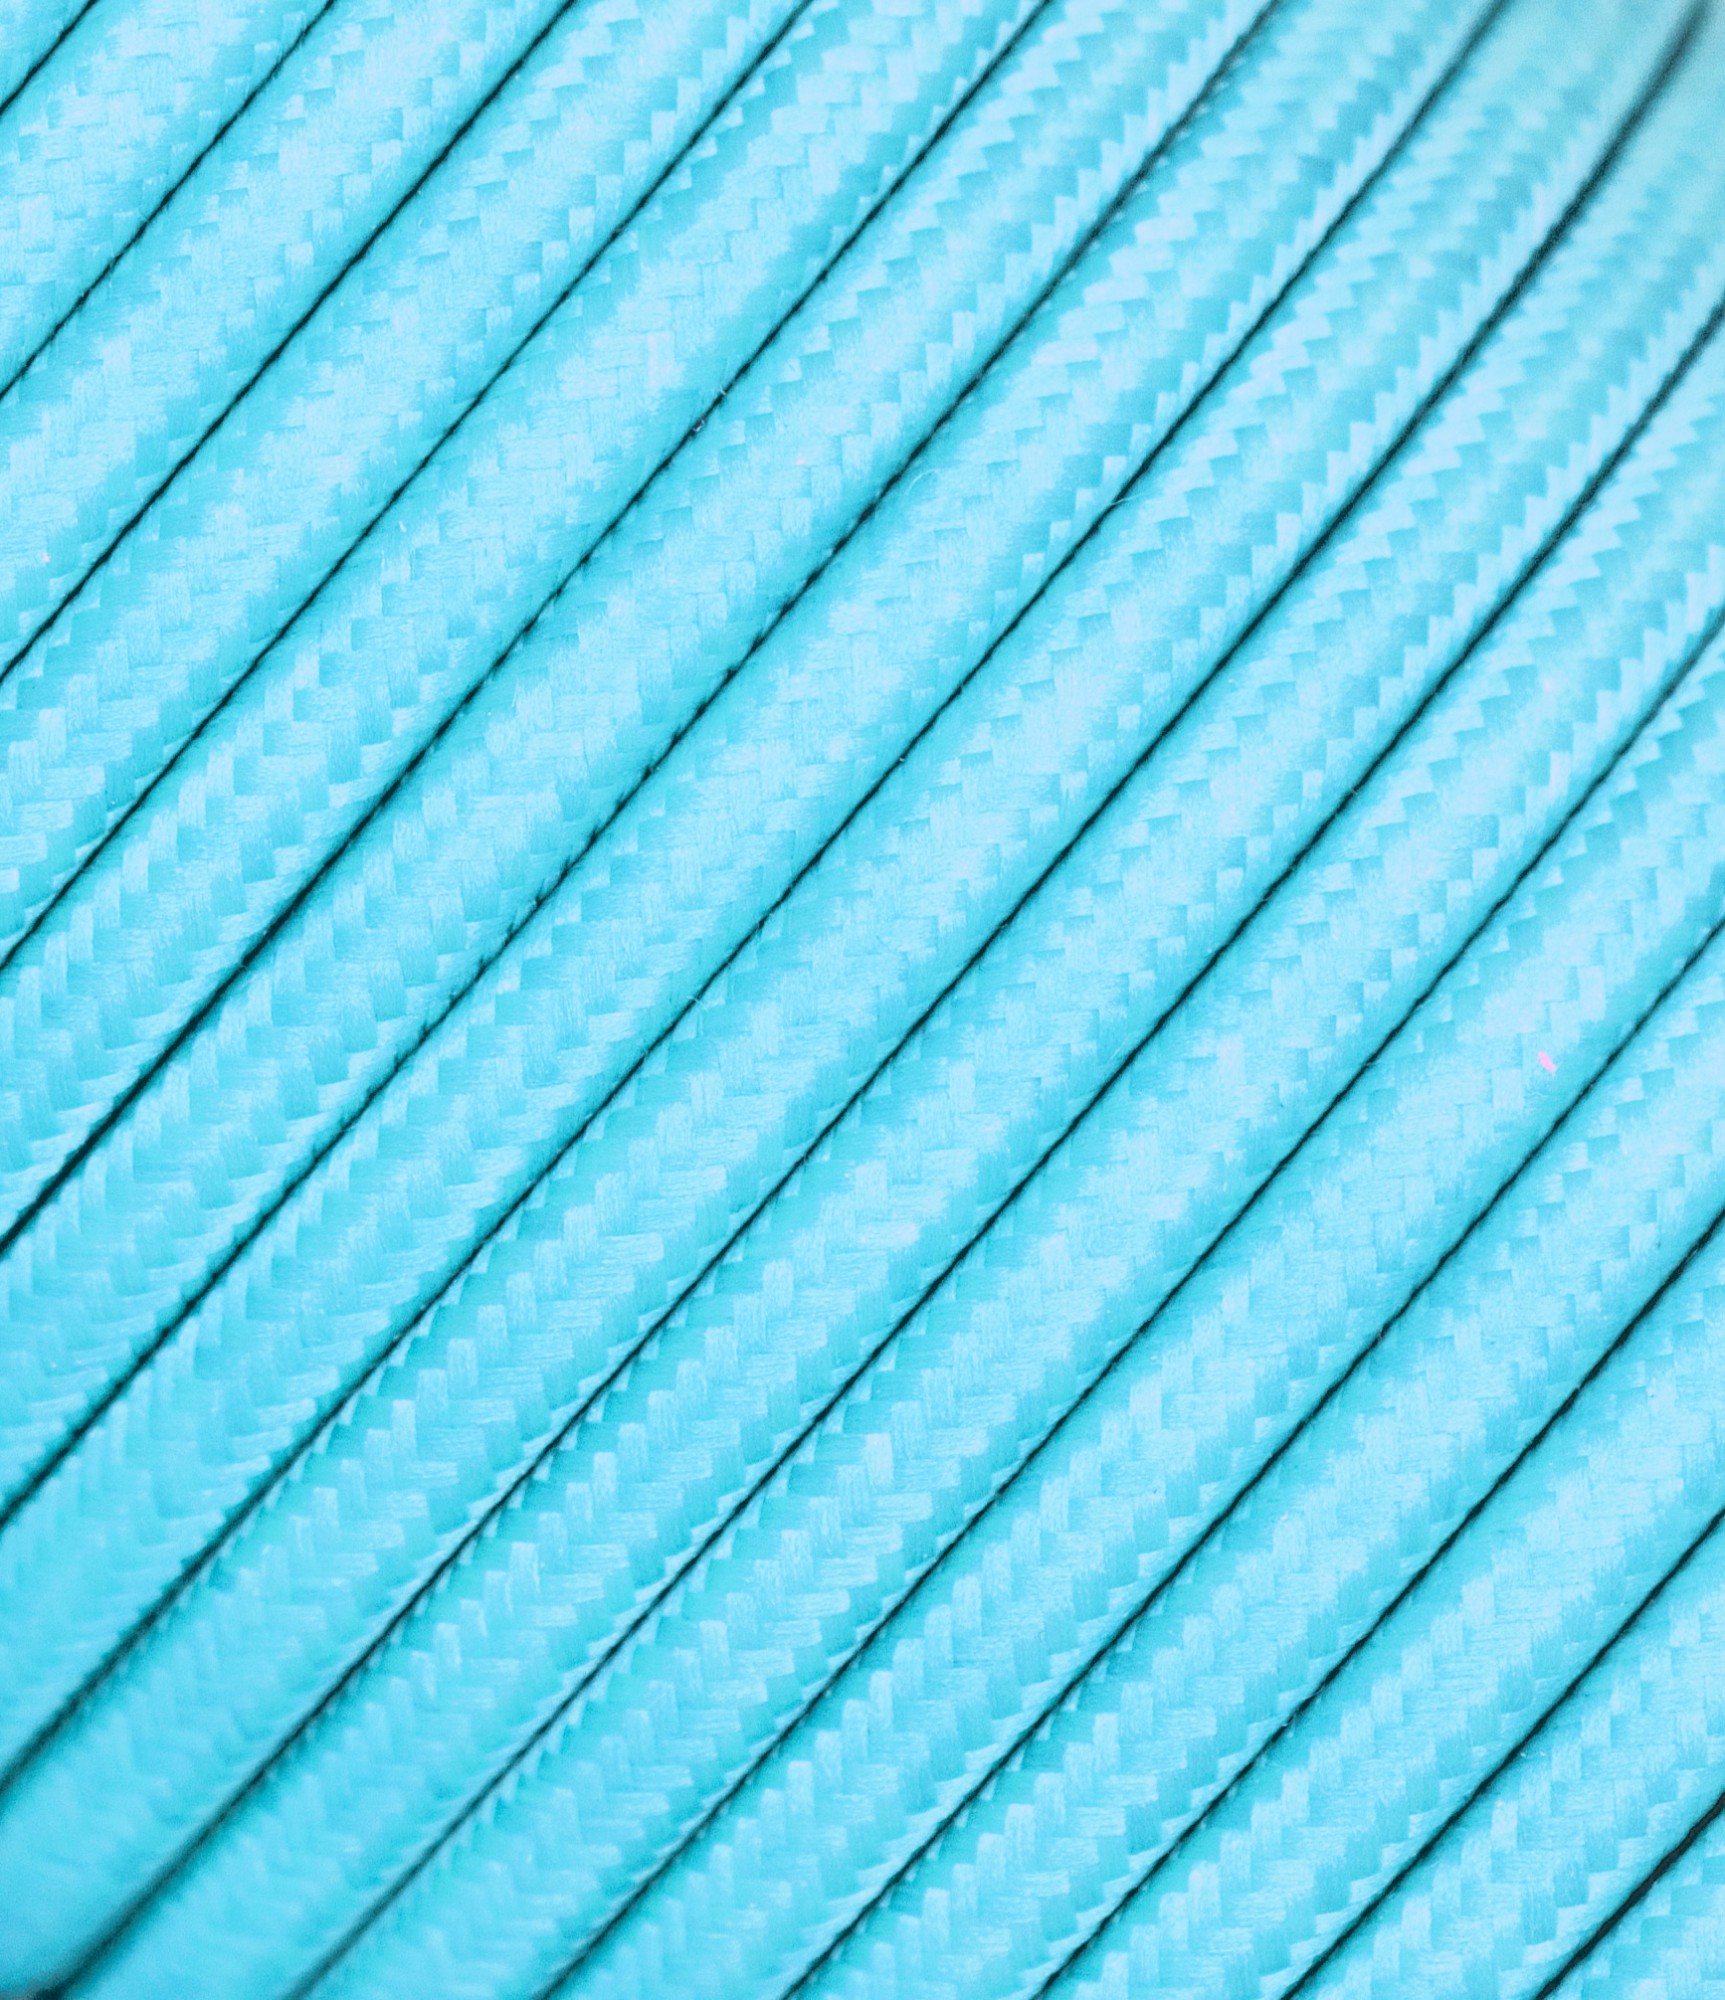 Tekstilinis laidas šviesiai mėlynas 2x0,75 mm²